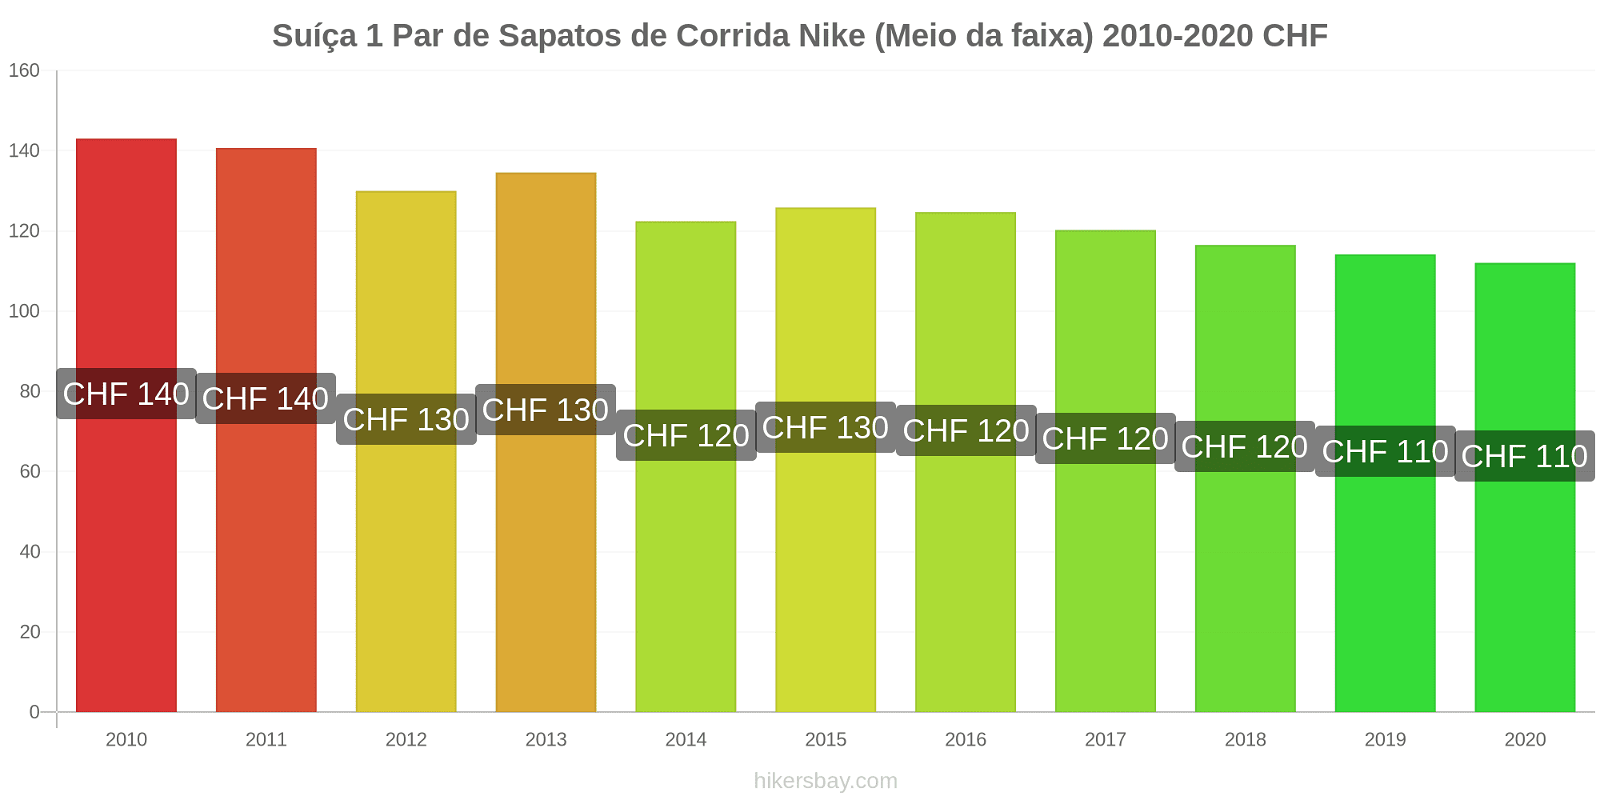 Suíça variação de preço 1 par de tênis Nike (mid-range) hikersbay.com